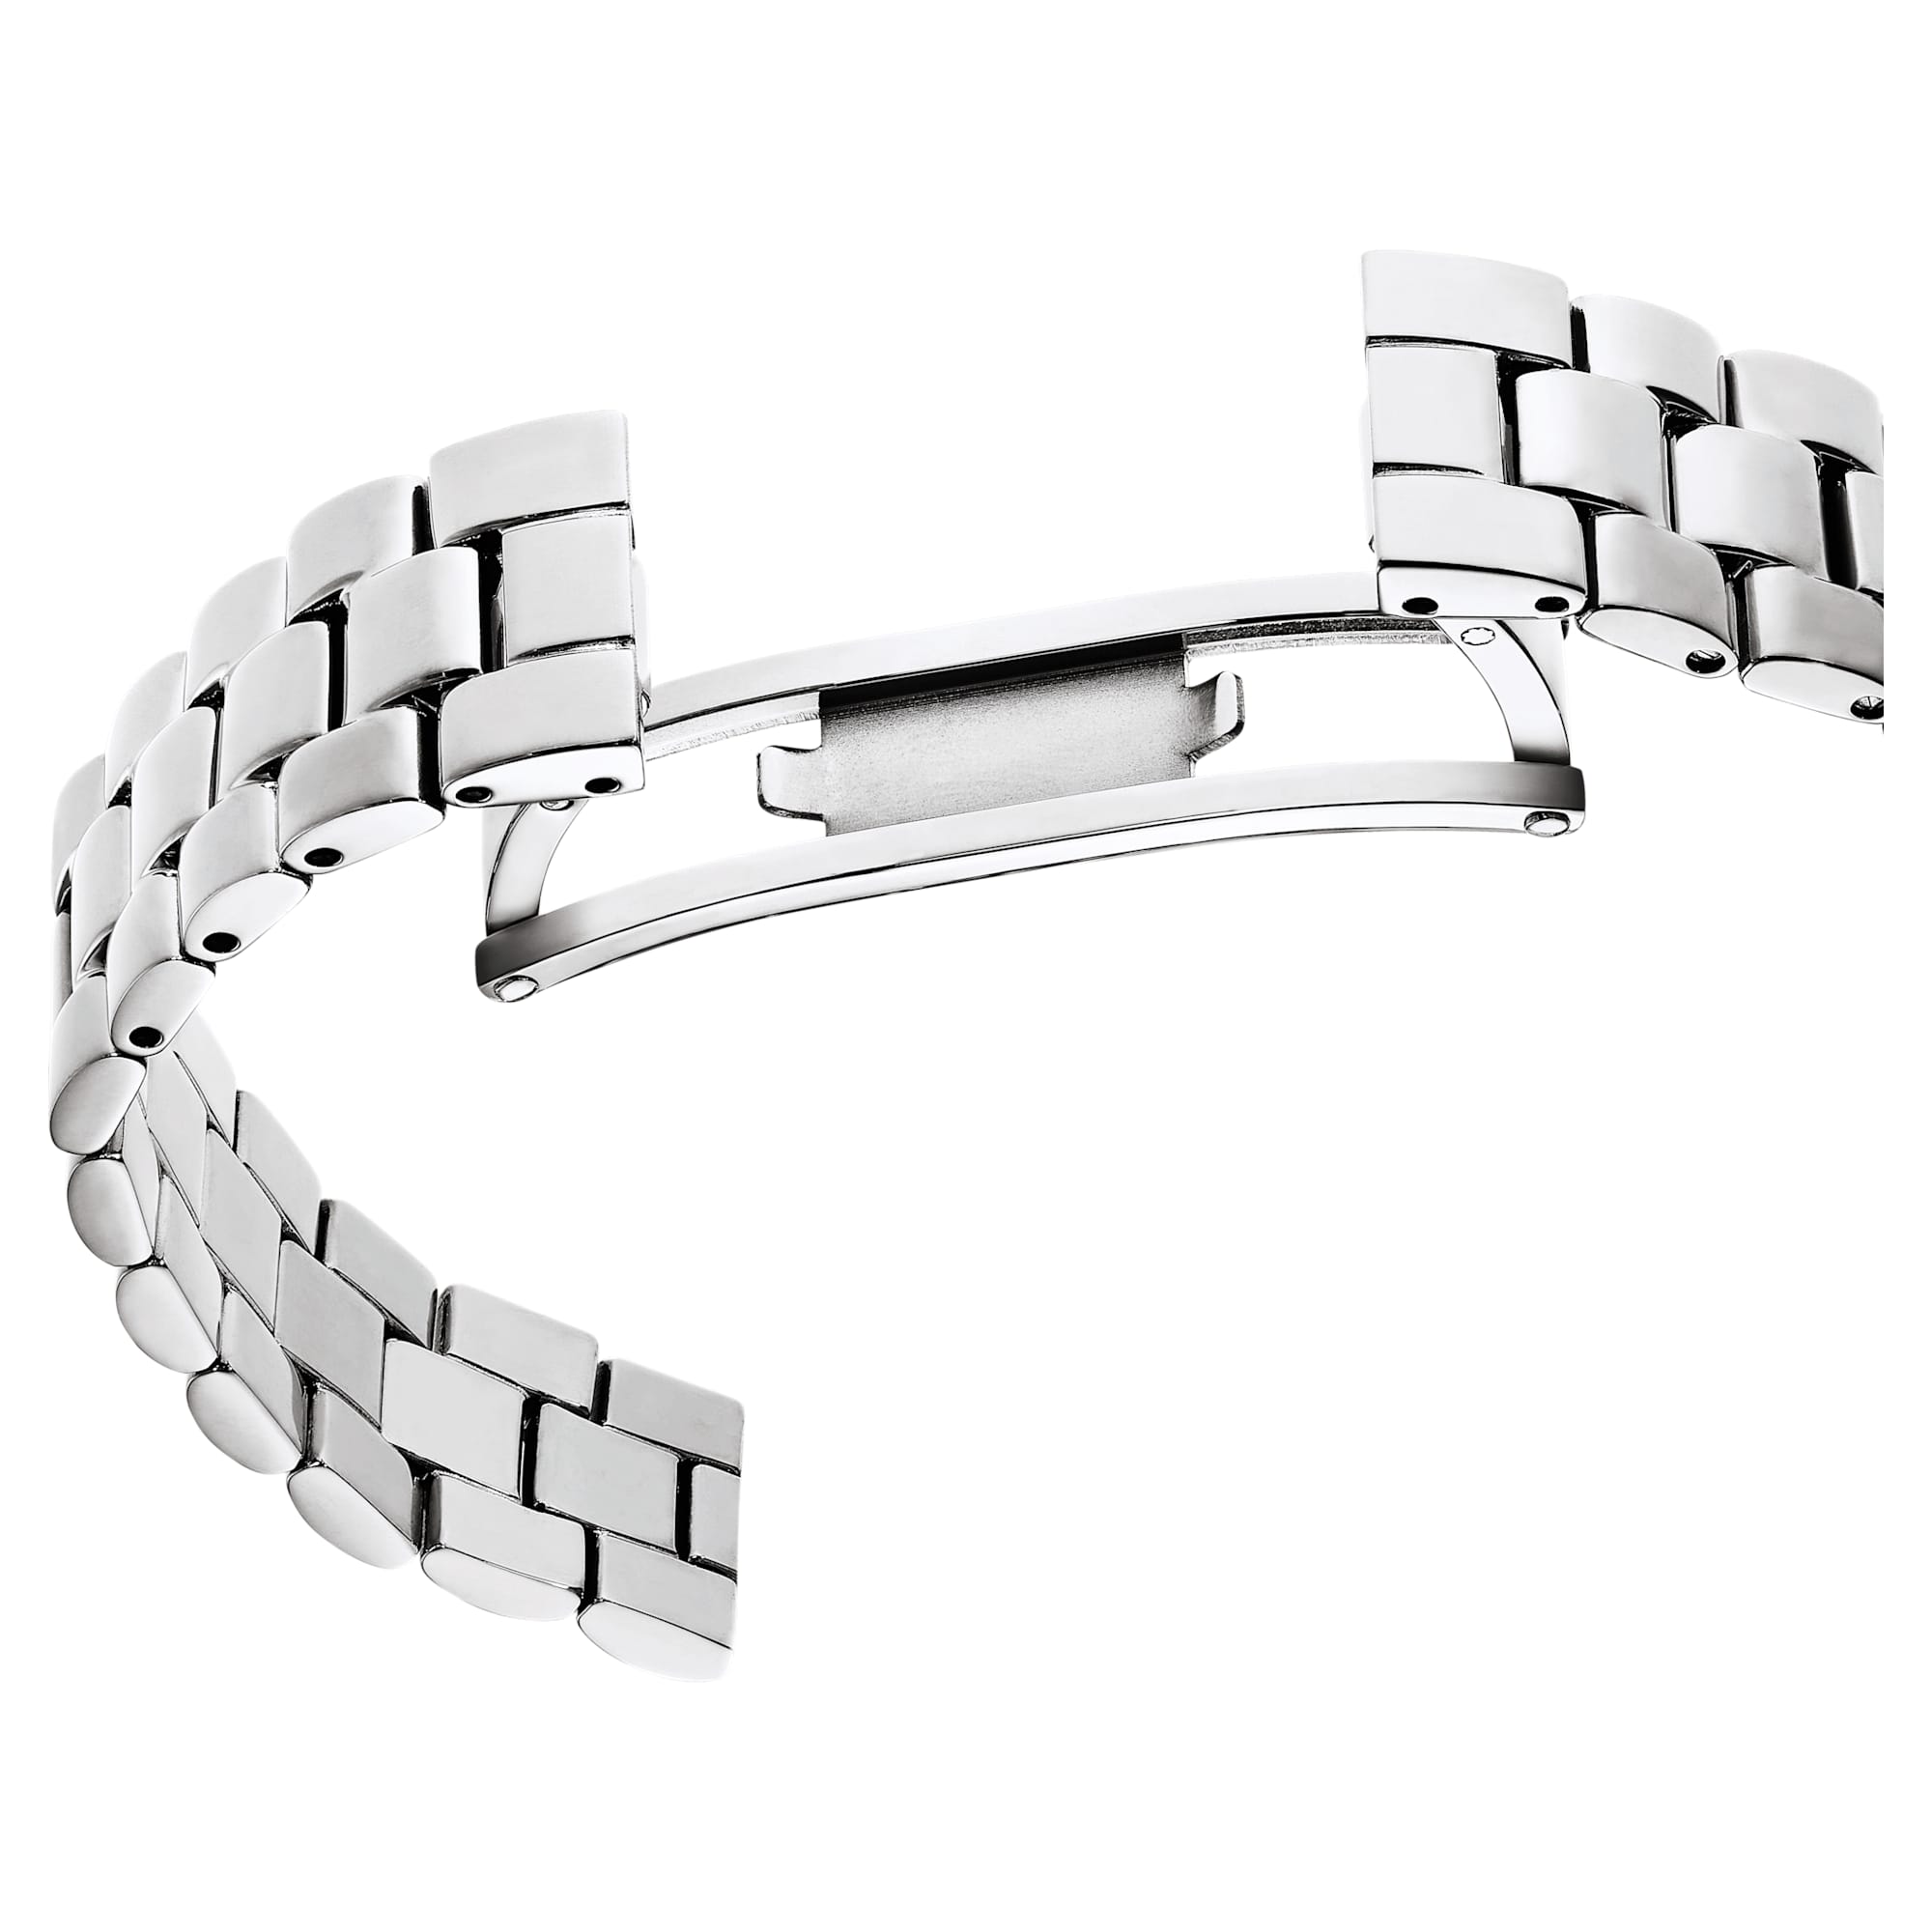 Certa – Weiß Silber – Uhr – Swarovski